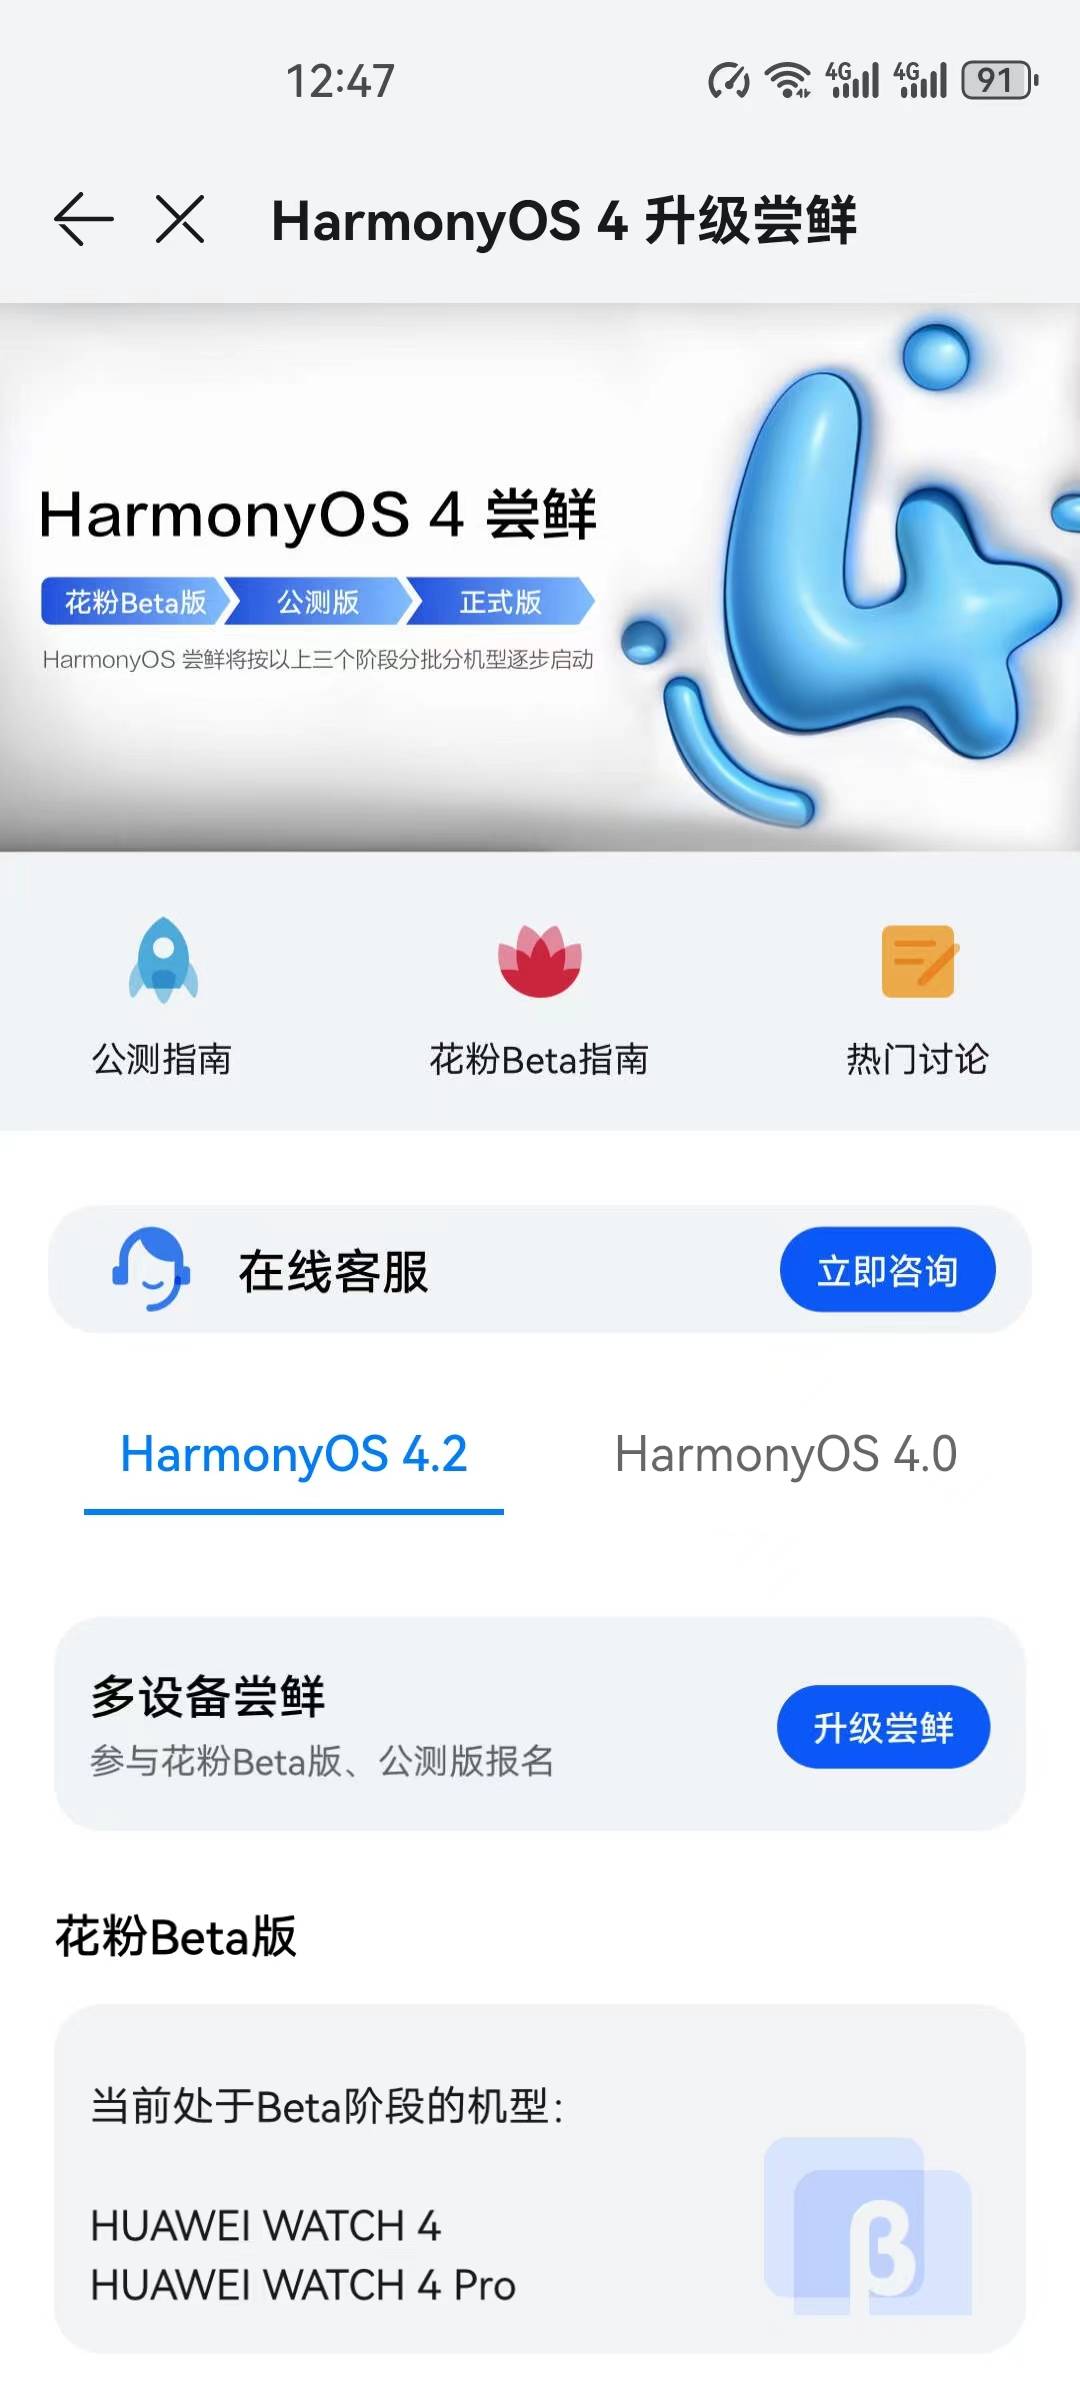 New Phones Update to HarmonyOS 4.2